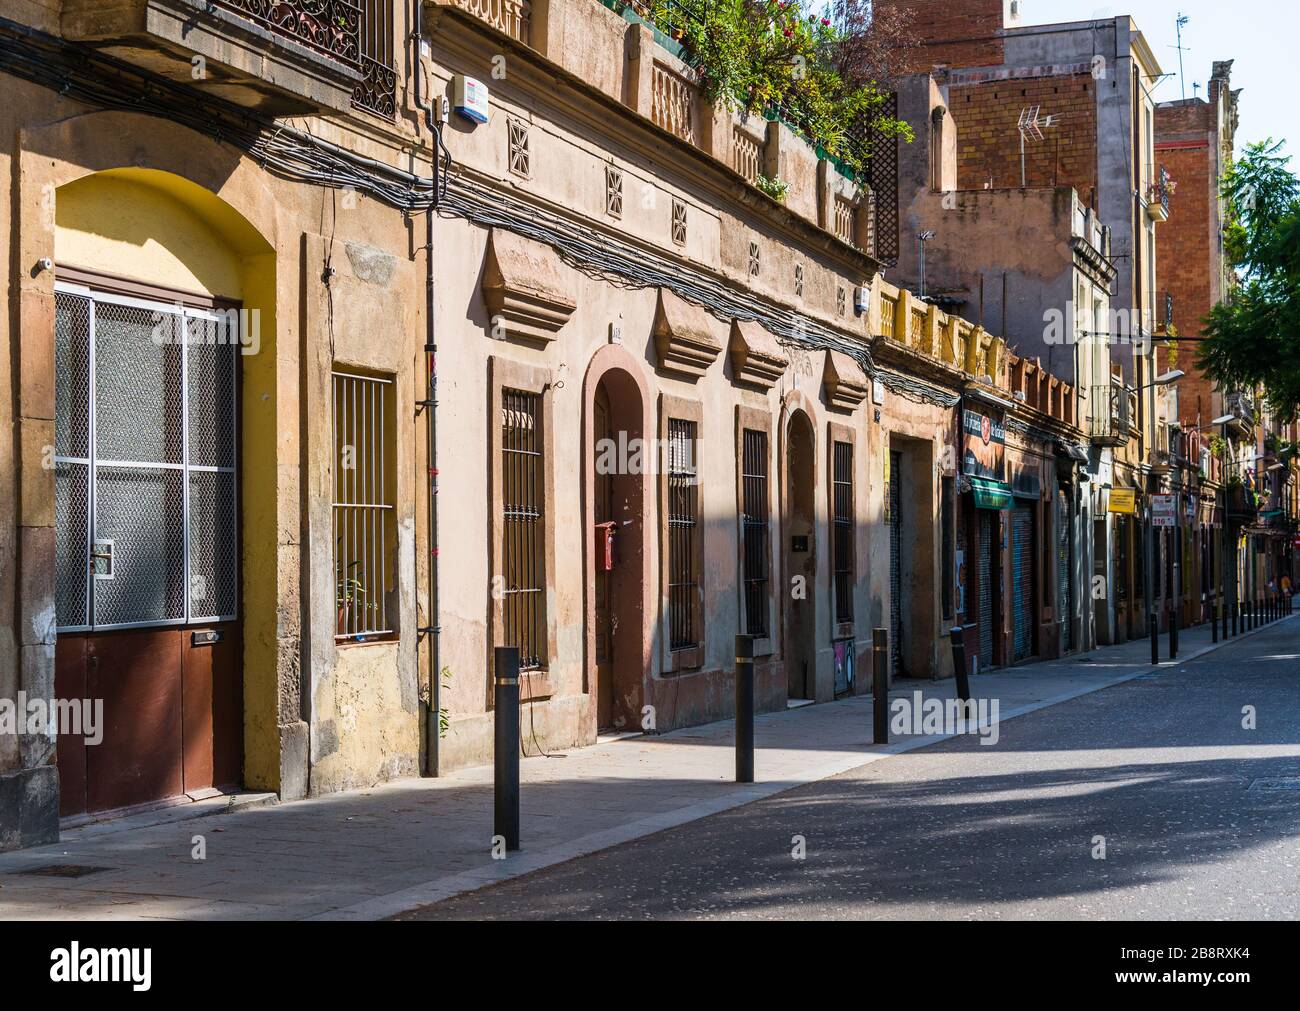 Barcelone, Espagne - 4 août 2019: Maisons colorées dans le quartier d'Eixample Banque D'Images